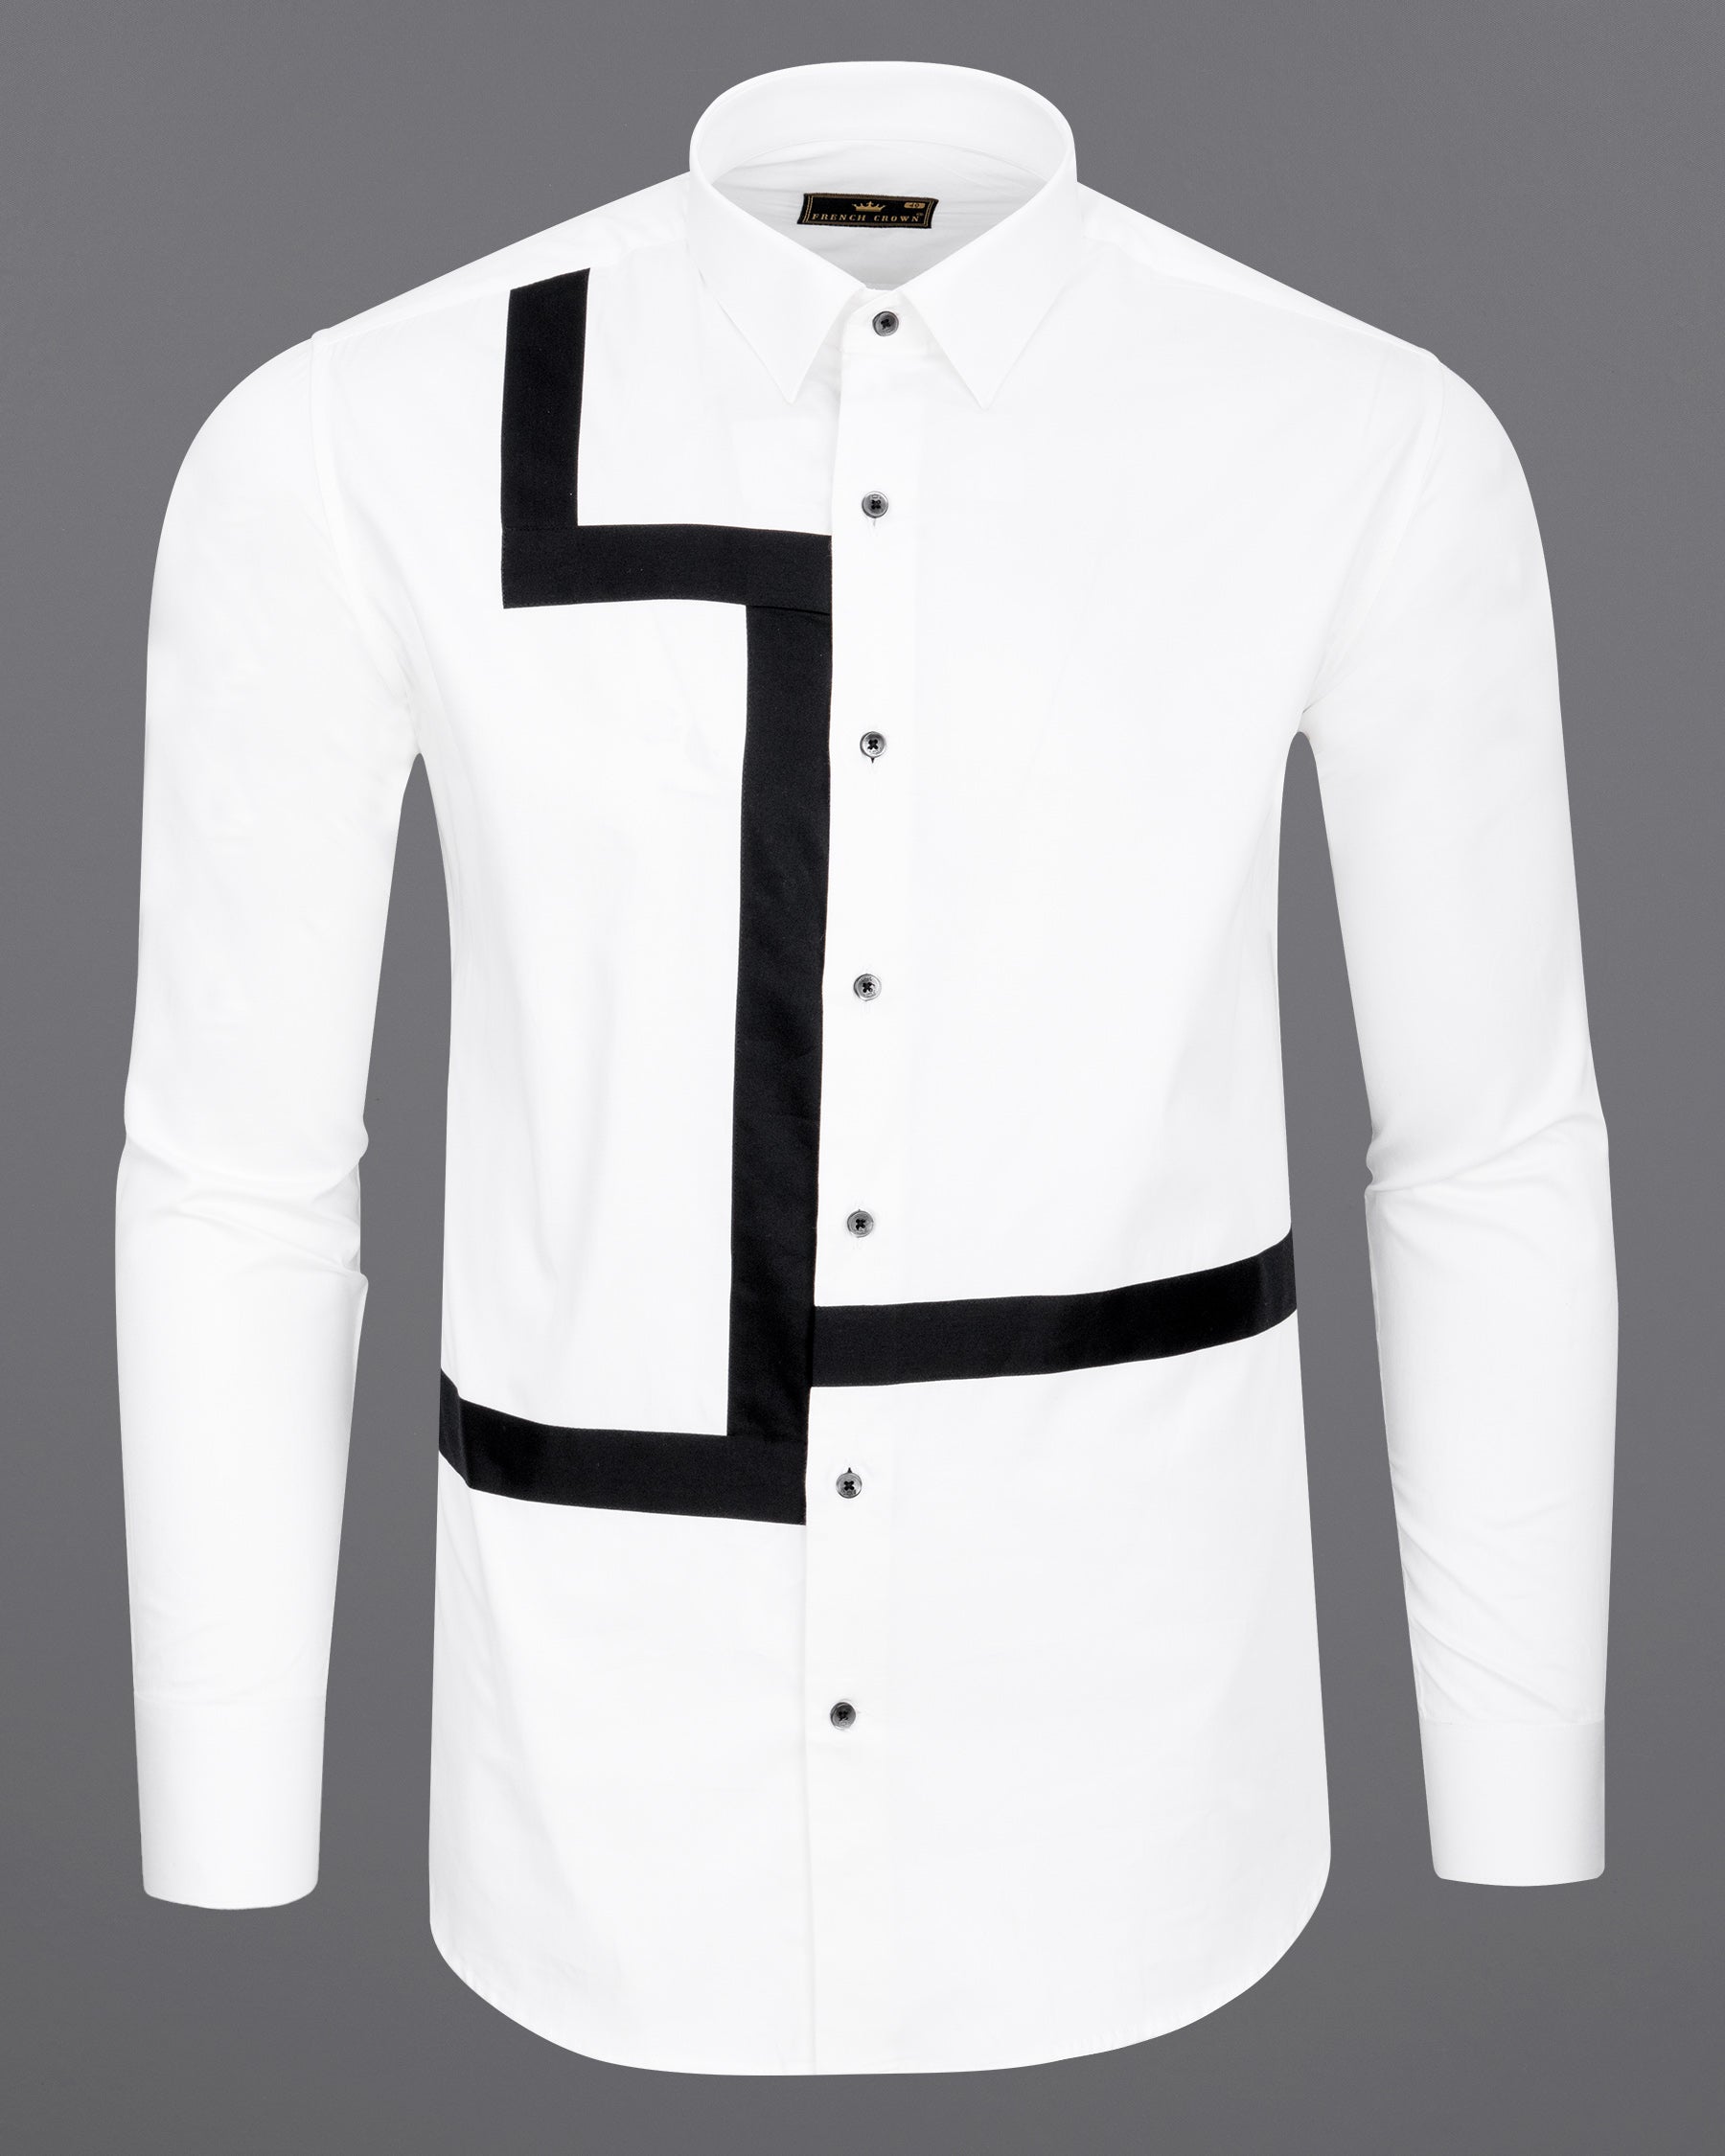 Bright White Subtle Sheen with Black Super Soft Premium Cotton Designer Shirt 6822-BLK-P304-38, 6822-BLK-P304-H-38, 6822-BLK-P304-39, 6822-BLK-P304-H-39, 6822-BLK-P304-40, 6822-BLK-P304-H-40, 6822-BLK-P304-42, 6822-BLK-P304-H-42, 6822-BLK-P304-44, 6822-BLK-P304-H-44, 6822-BLK-P304-46, 6822-BLK-P304-H-46, 6822-BLK-P304-48, 6822-BLK-P304-H-48, 6822-BLK-P304-50, 6822-BLK-P304-H-50, 6822-BLK-P304-52, 6822-BLK-P304-H-52